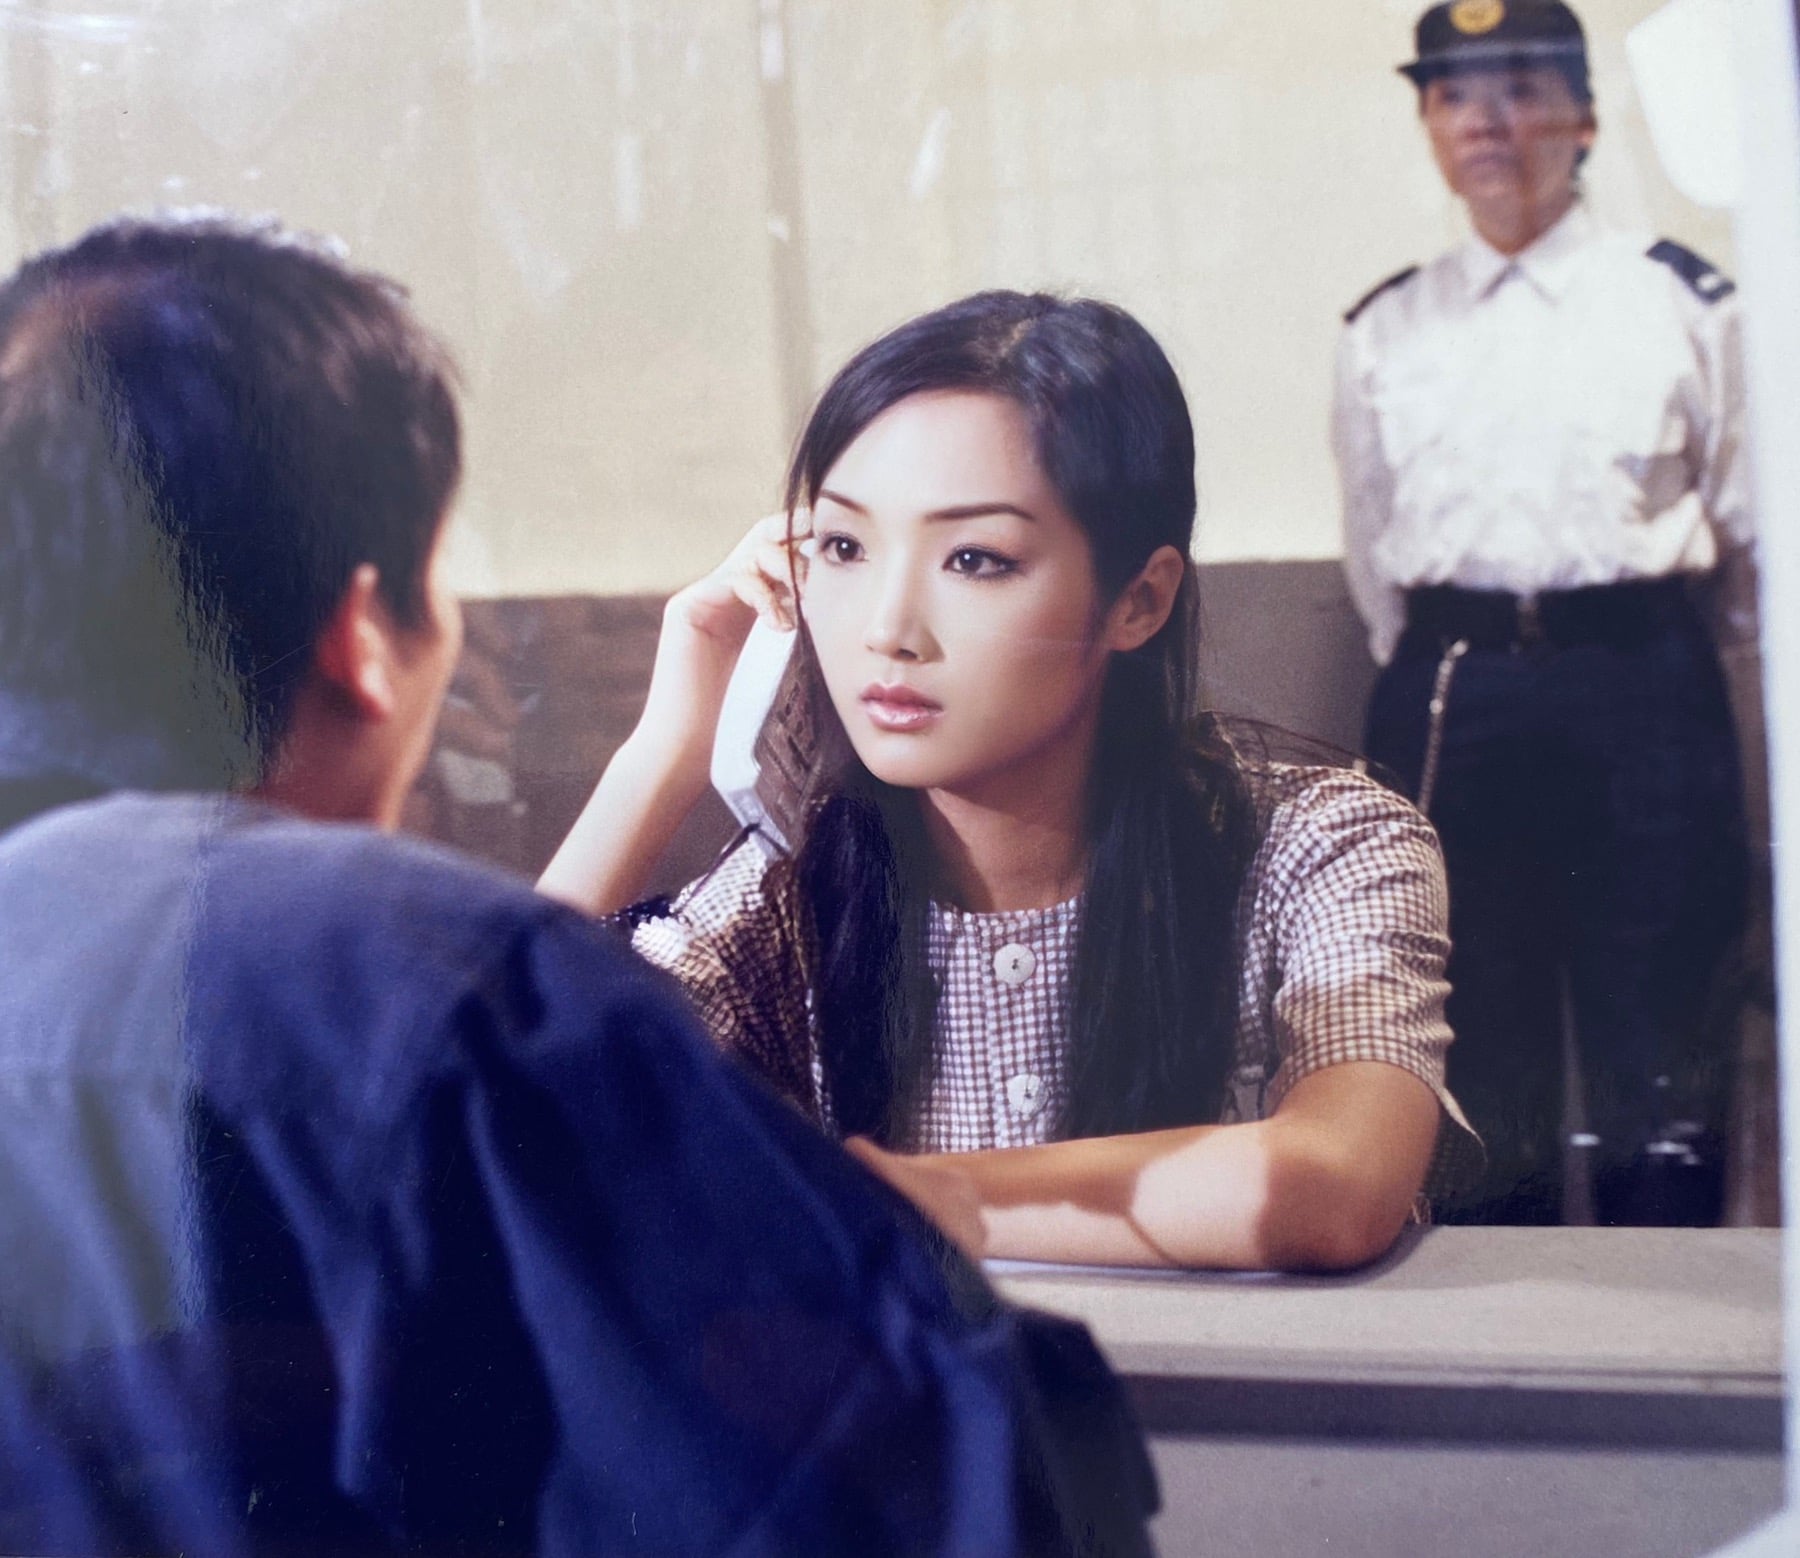 Hoa hậu Đền Hùng Giáng My kể về vai diễn tù nhân với chuỗi ngày đầy ám ảnh trong trại giam - Ảnh 1.